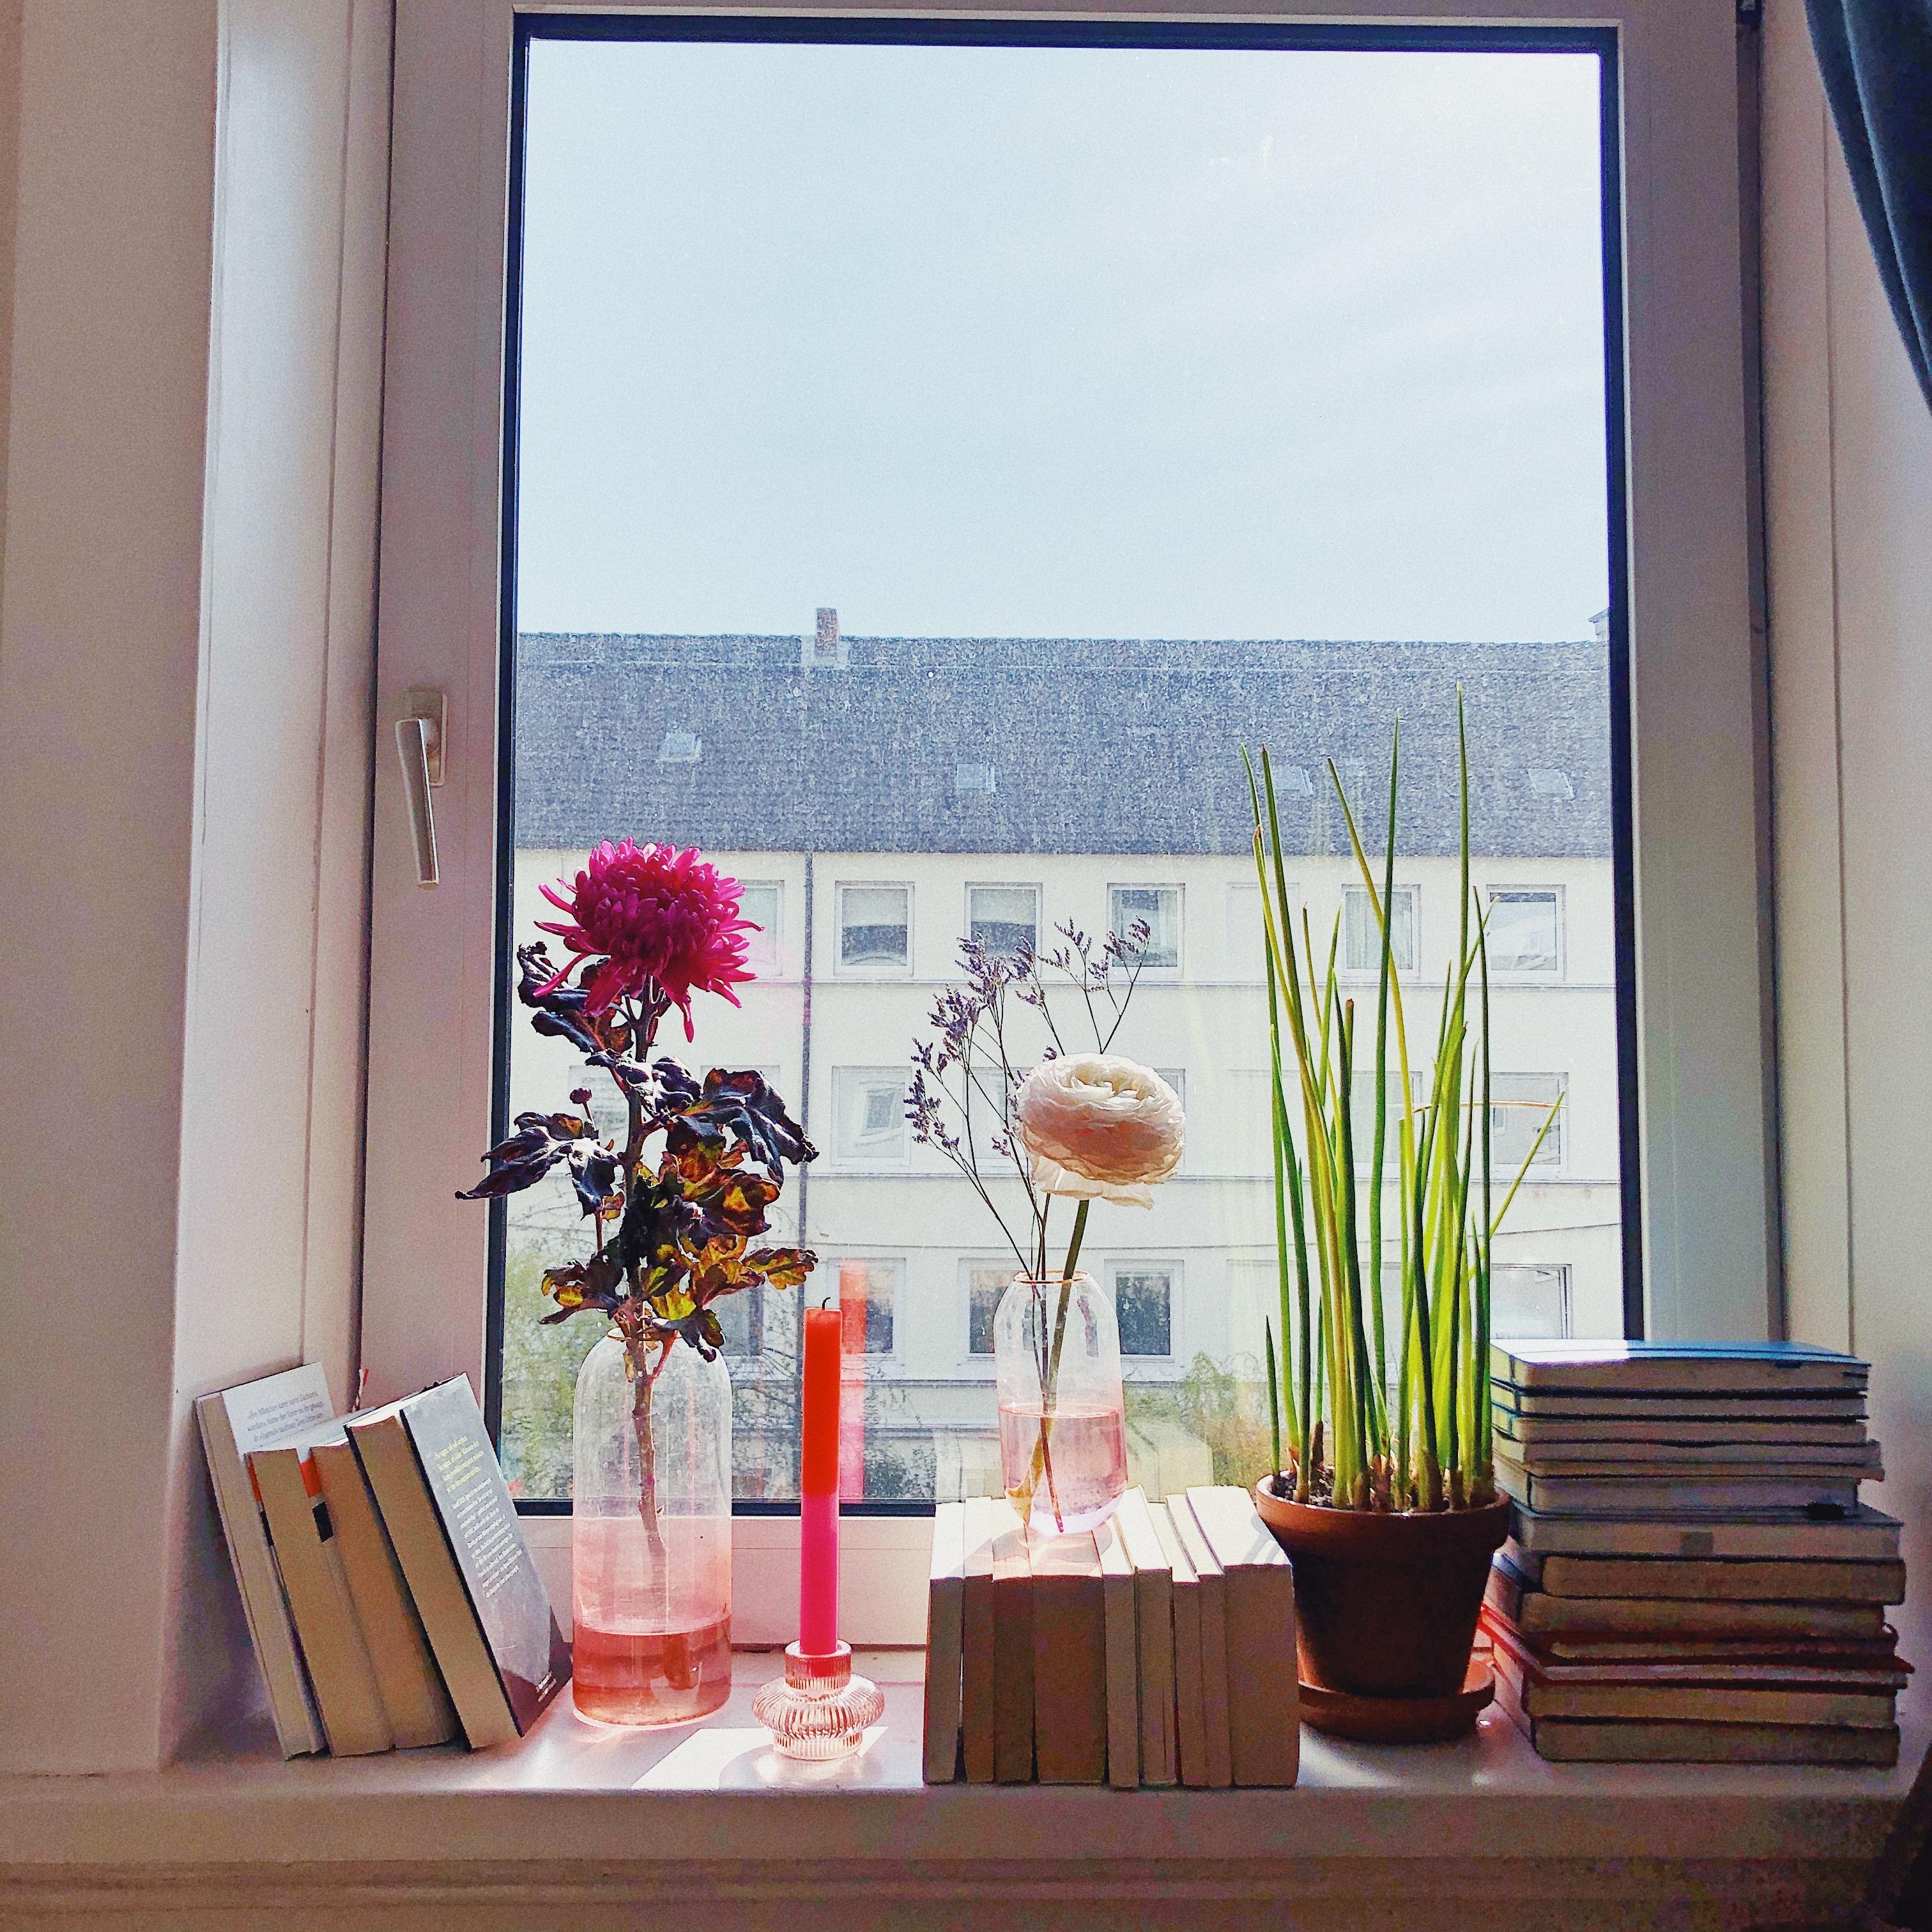 Bücher mit Aussicht 
#Bücher #Fensterbank #Wohnzimmer #Bücherliebe #Blumen